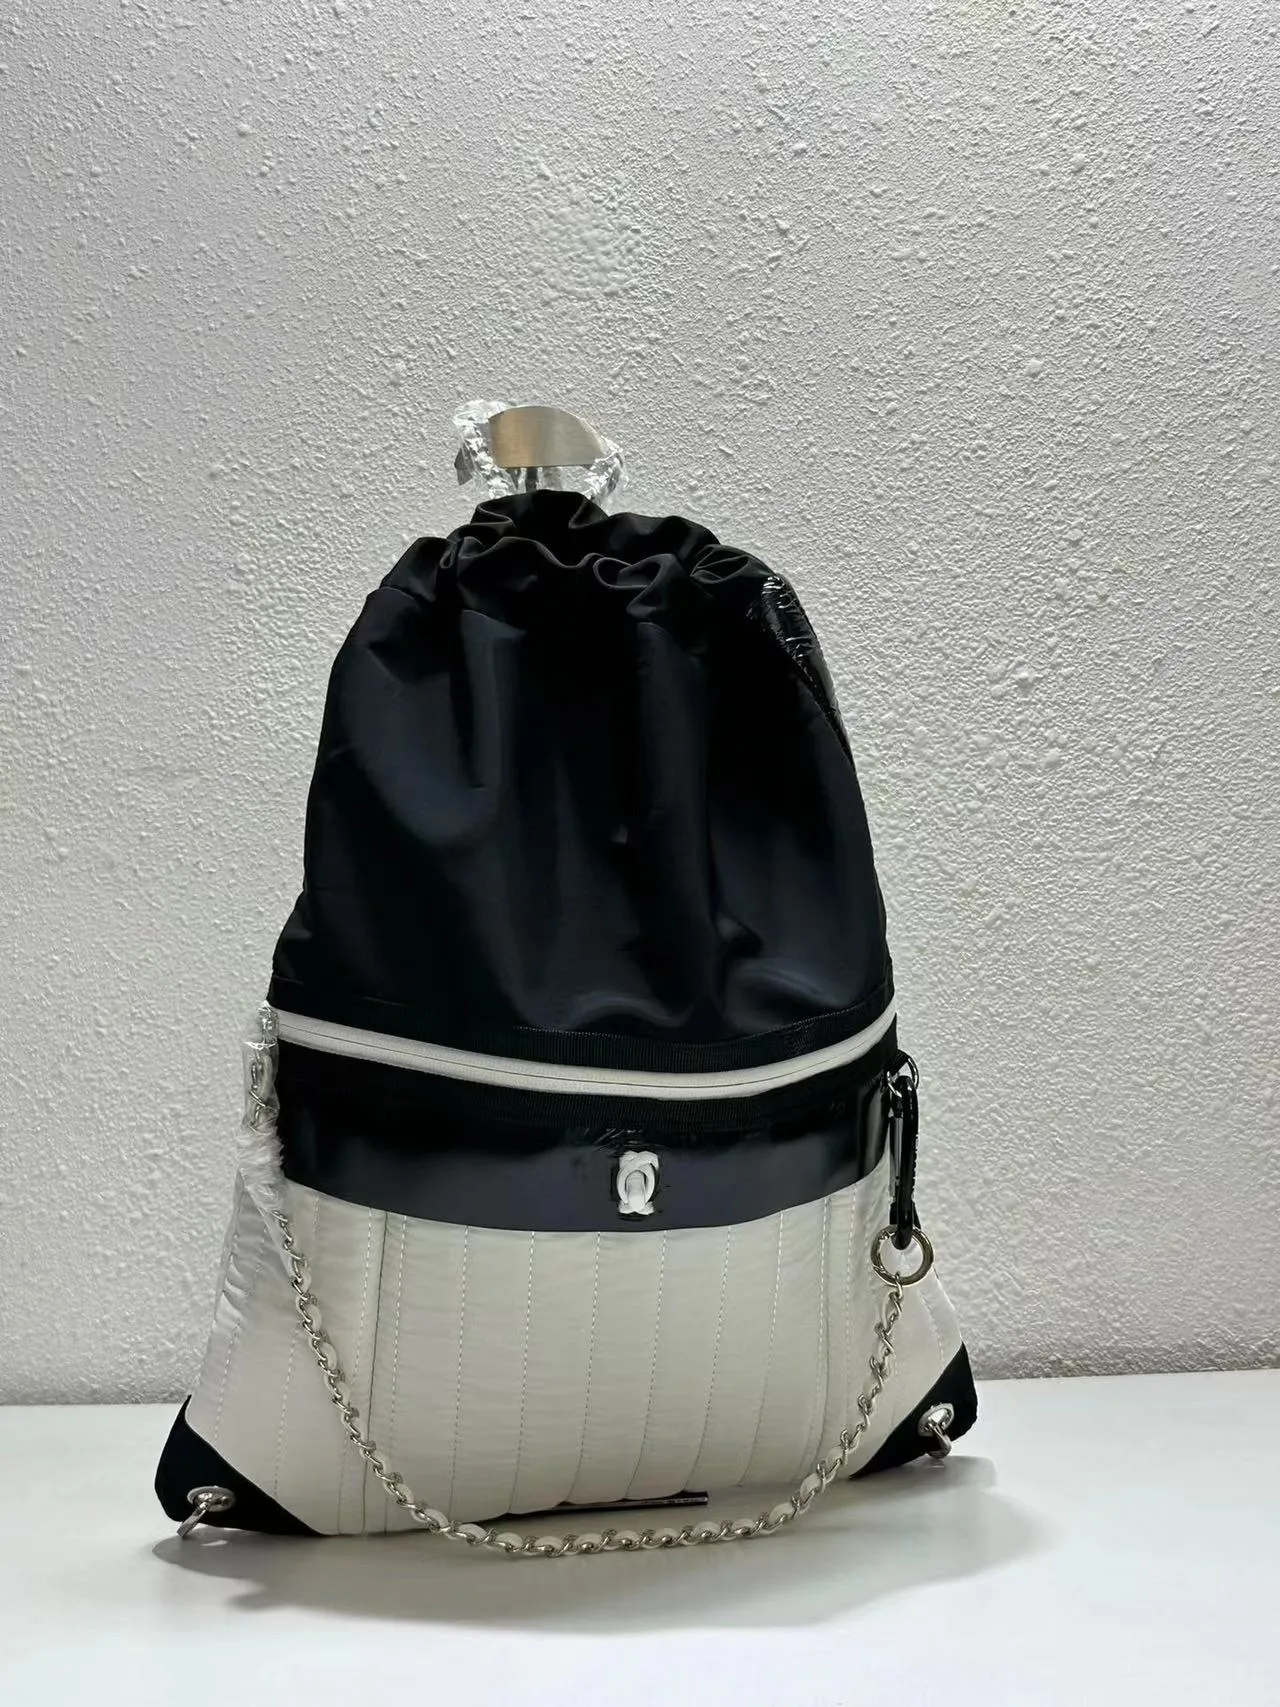 2023 L'arrivo della nuova borsa zaino in nylon di alta qualità da donna Wetton Backpack designer borsa zaino elegante stile casual da donna piccolo zaino